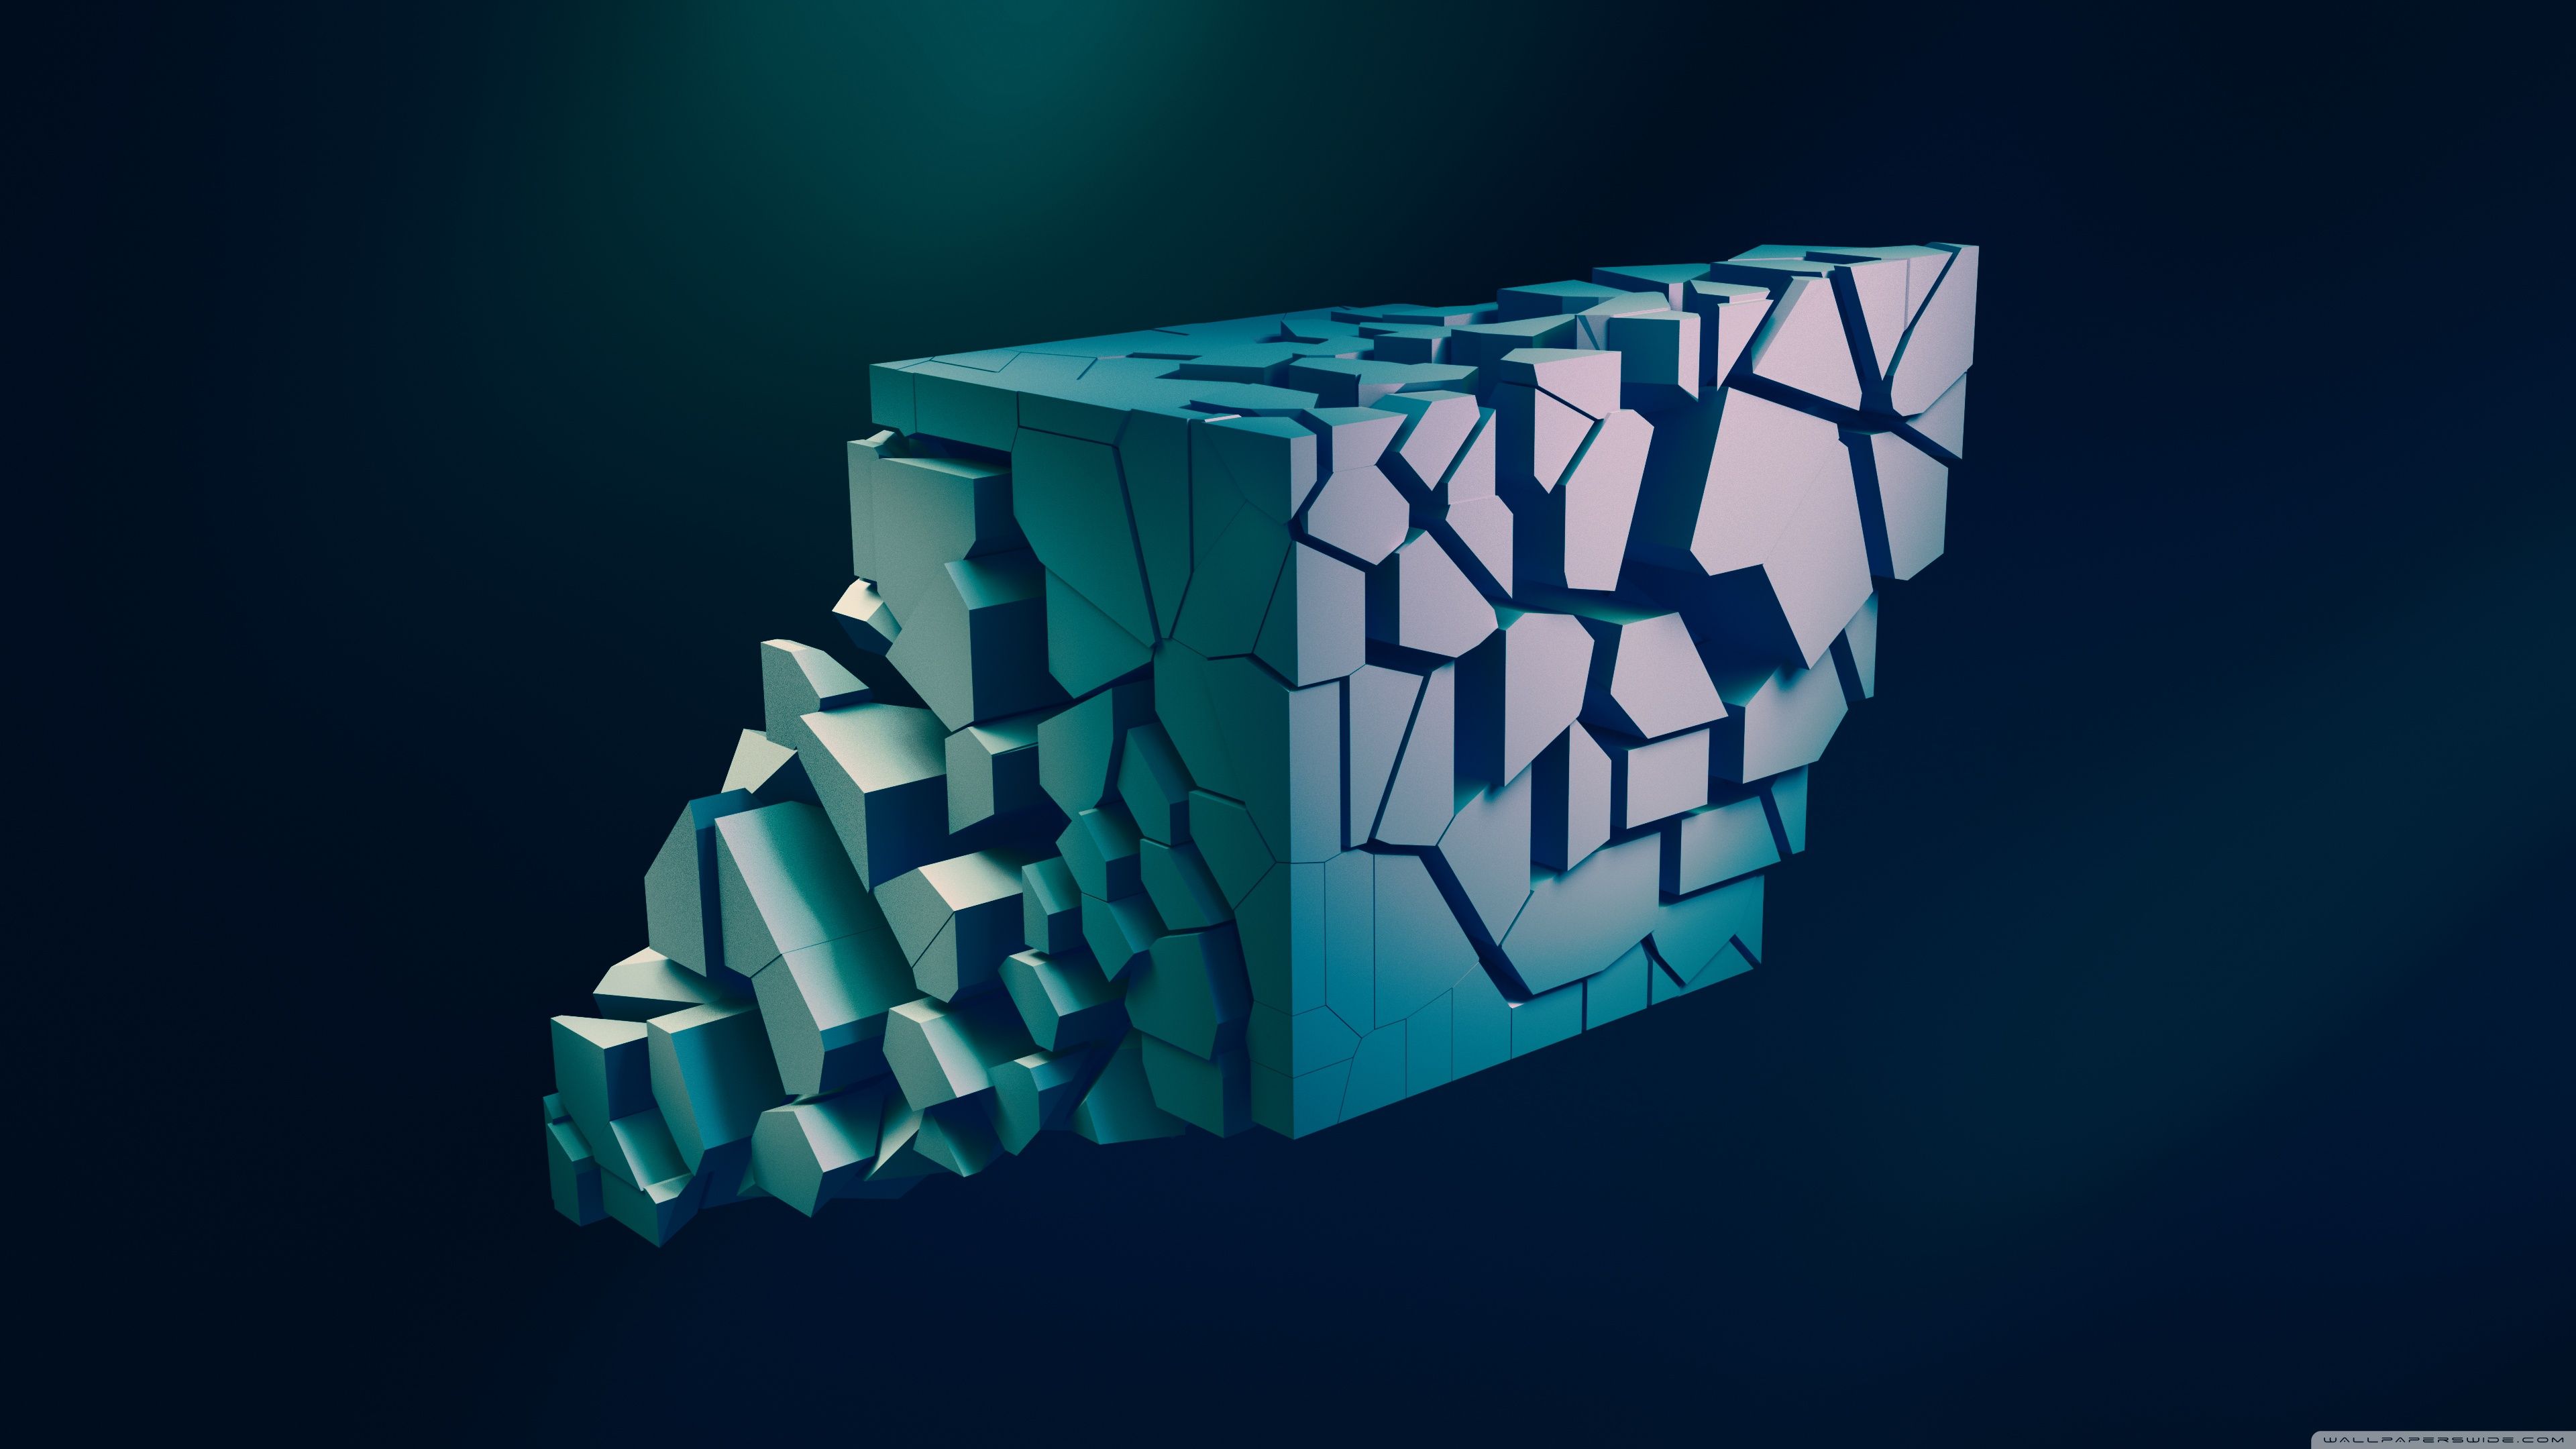 4k Ultra HD 3D Wallpapers - Wallpaper Cave